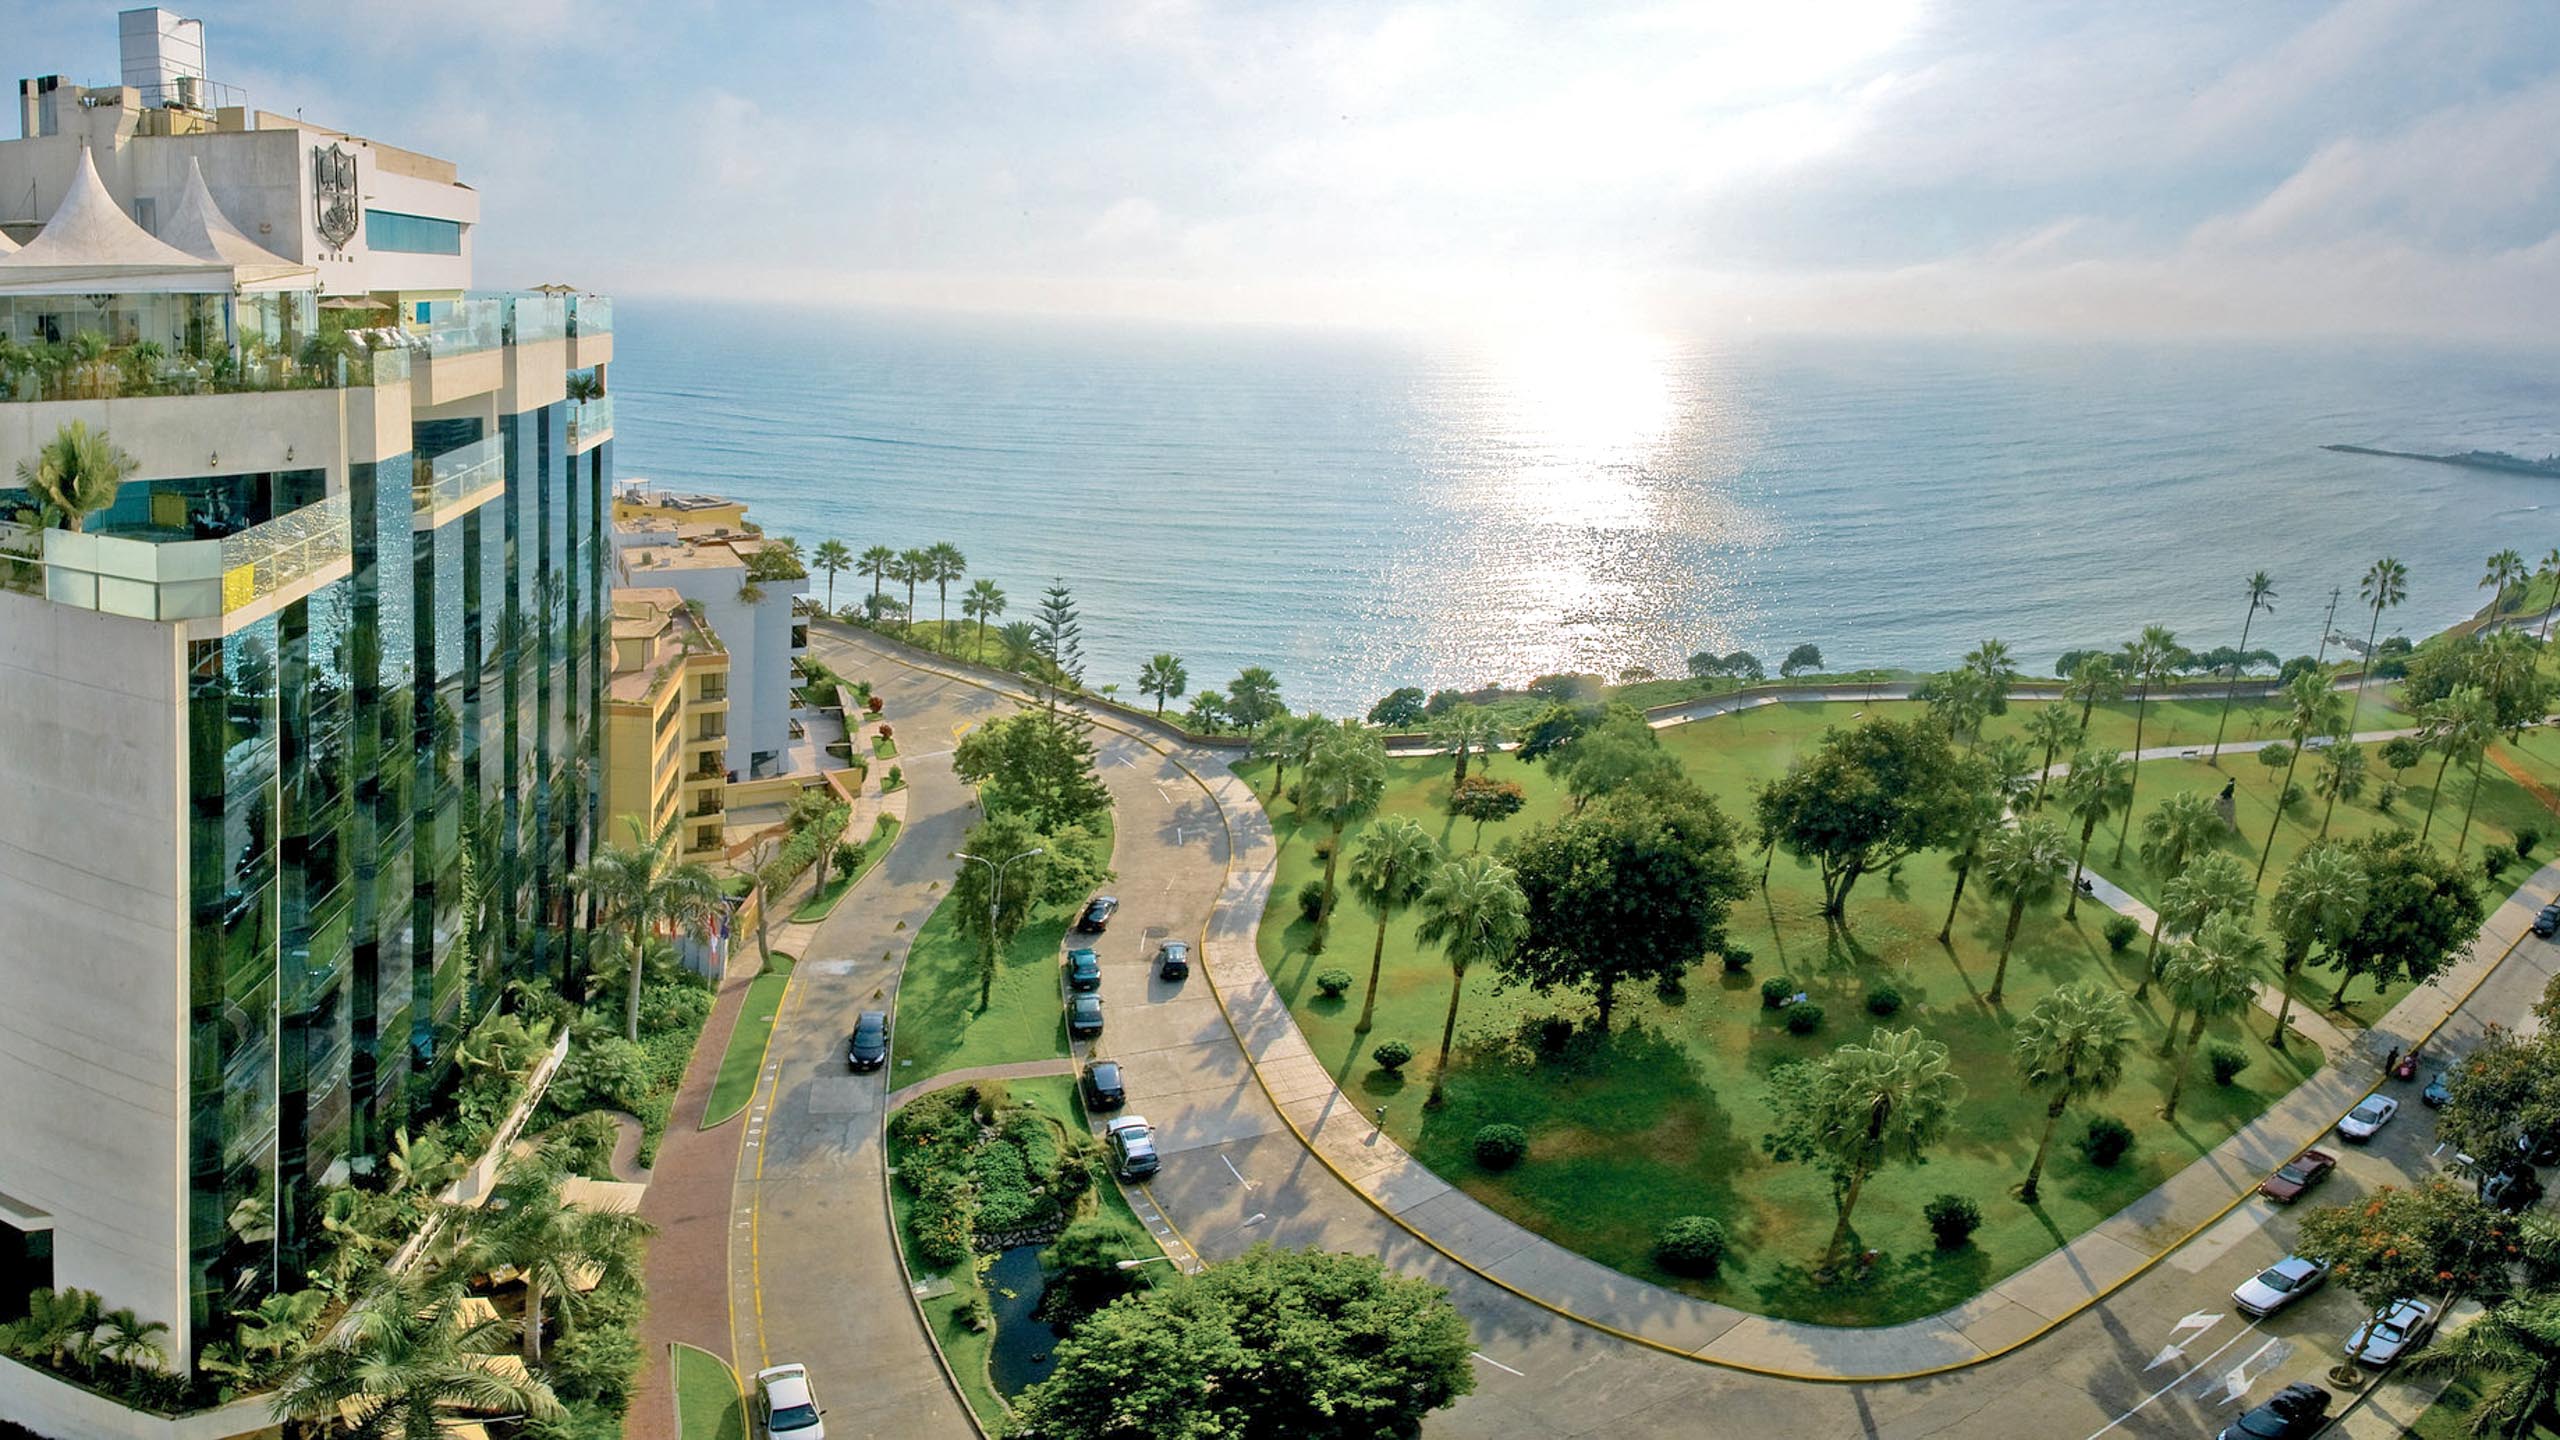 Belmond Miraflores Park, Hotels in Lima